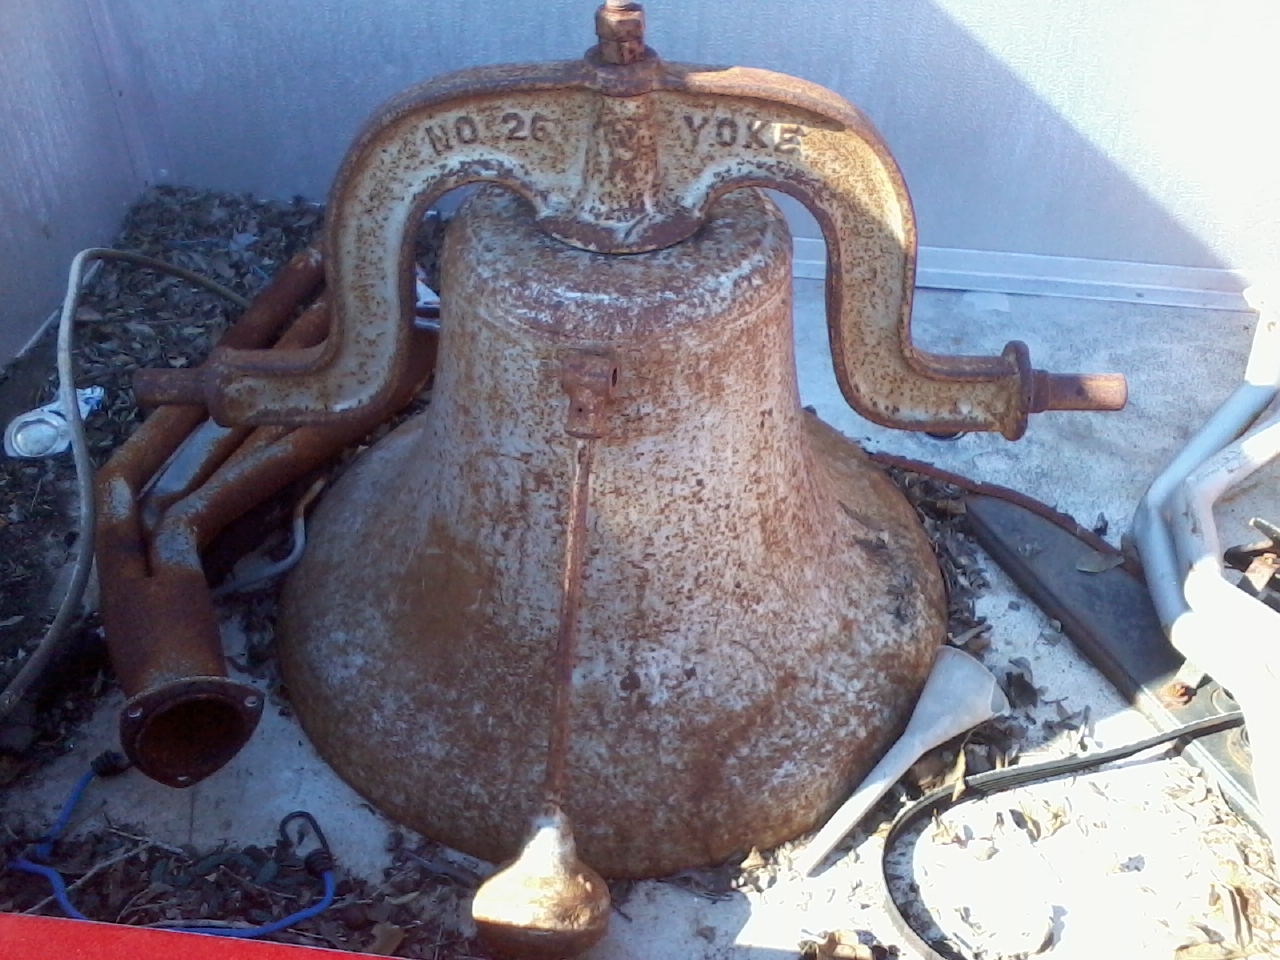 Number 26, Yoke,  1800-1900\'s vintage bell